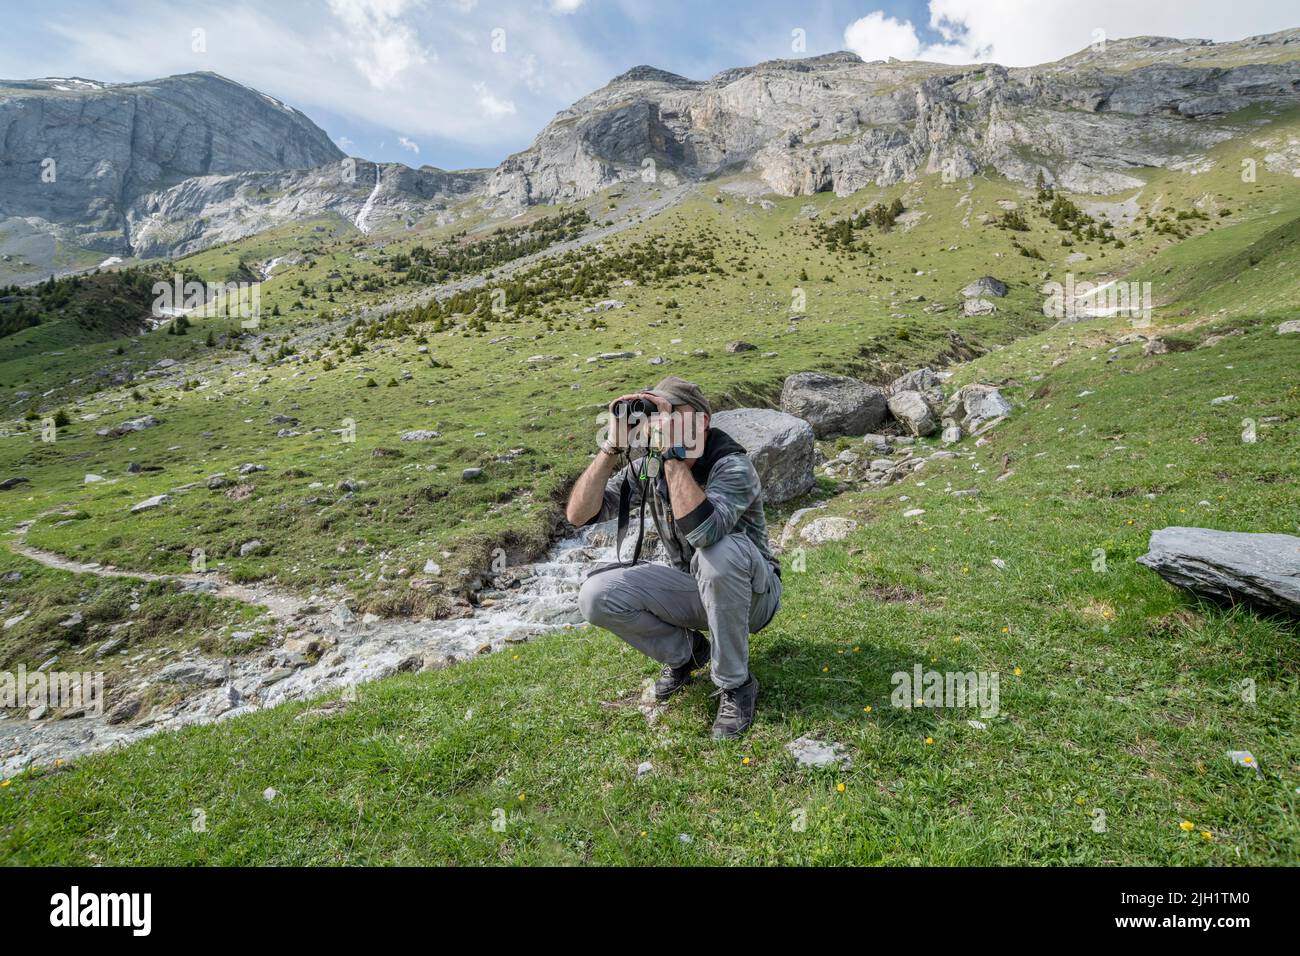 Le photographe de la faune Marcos G. Meier, qui s'aperce de la région des Alpes à la recherche de marmottes alpines. Brigels, région de Surselva, canton des Grisons, Banque D'Images